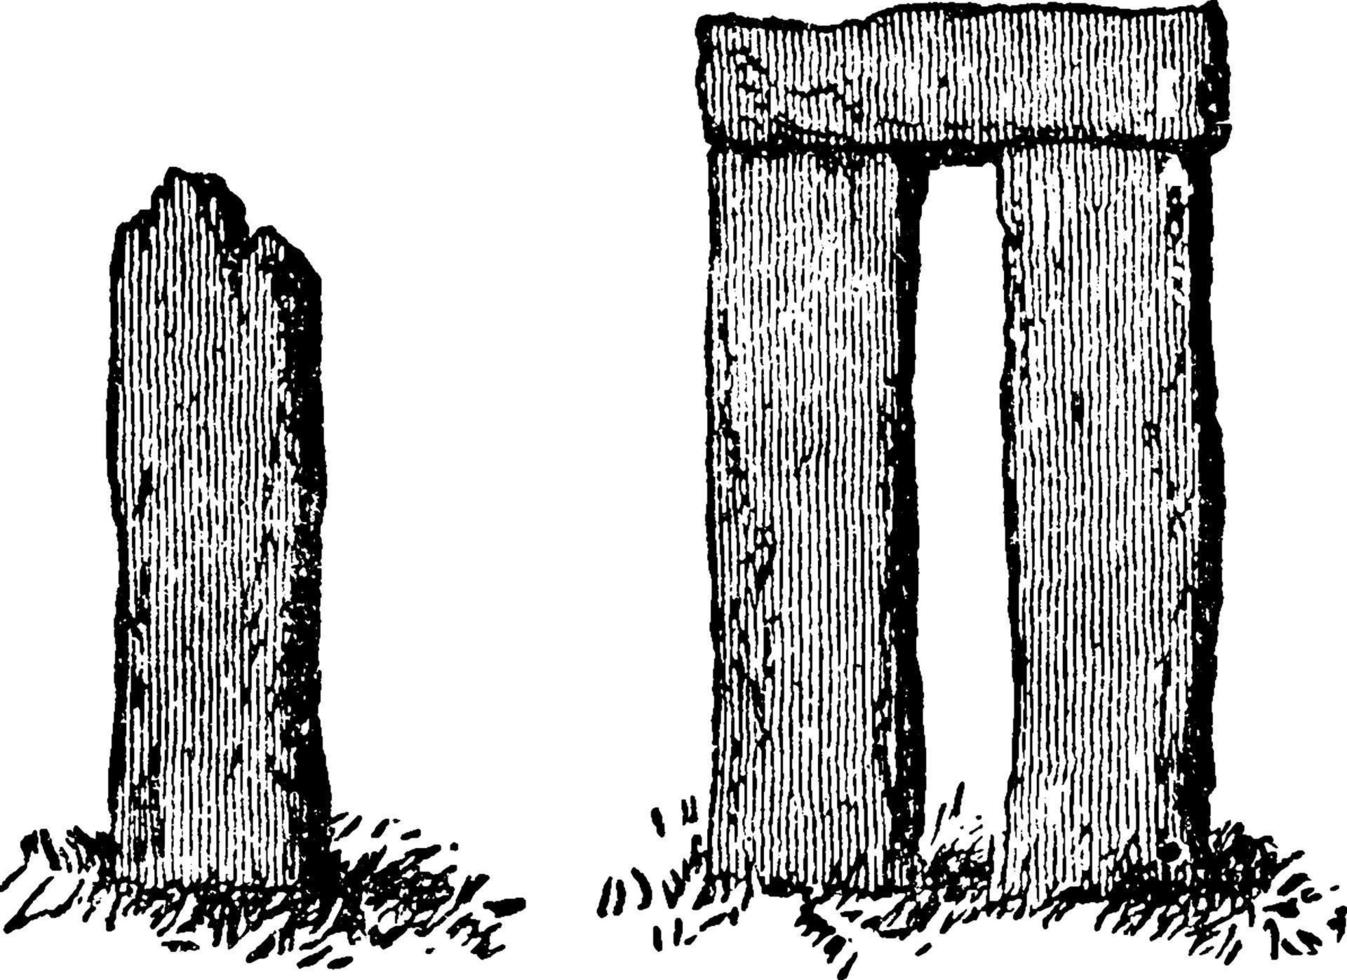 Maenhir und Trillithon oder Monolithen oder einzelner aufrechter Stein, Vintage-Illustration. vektor